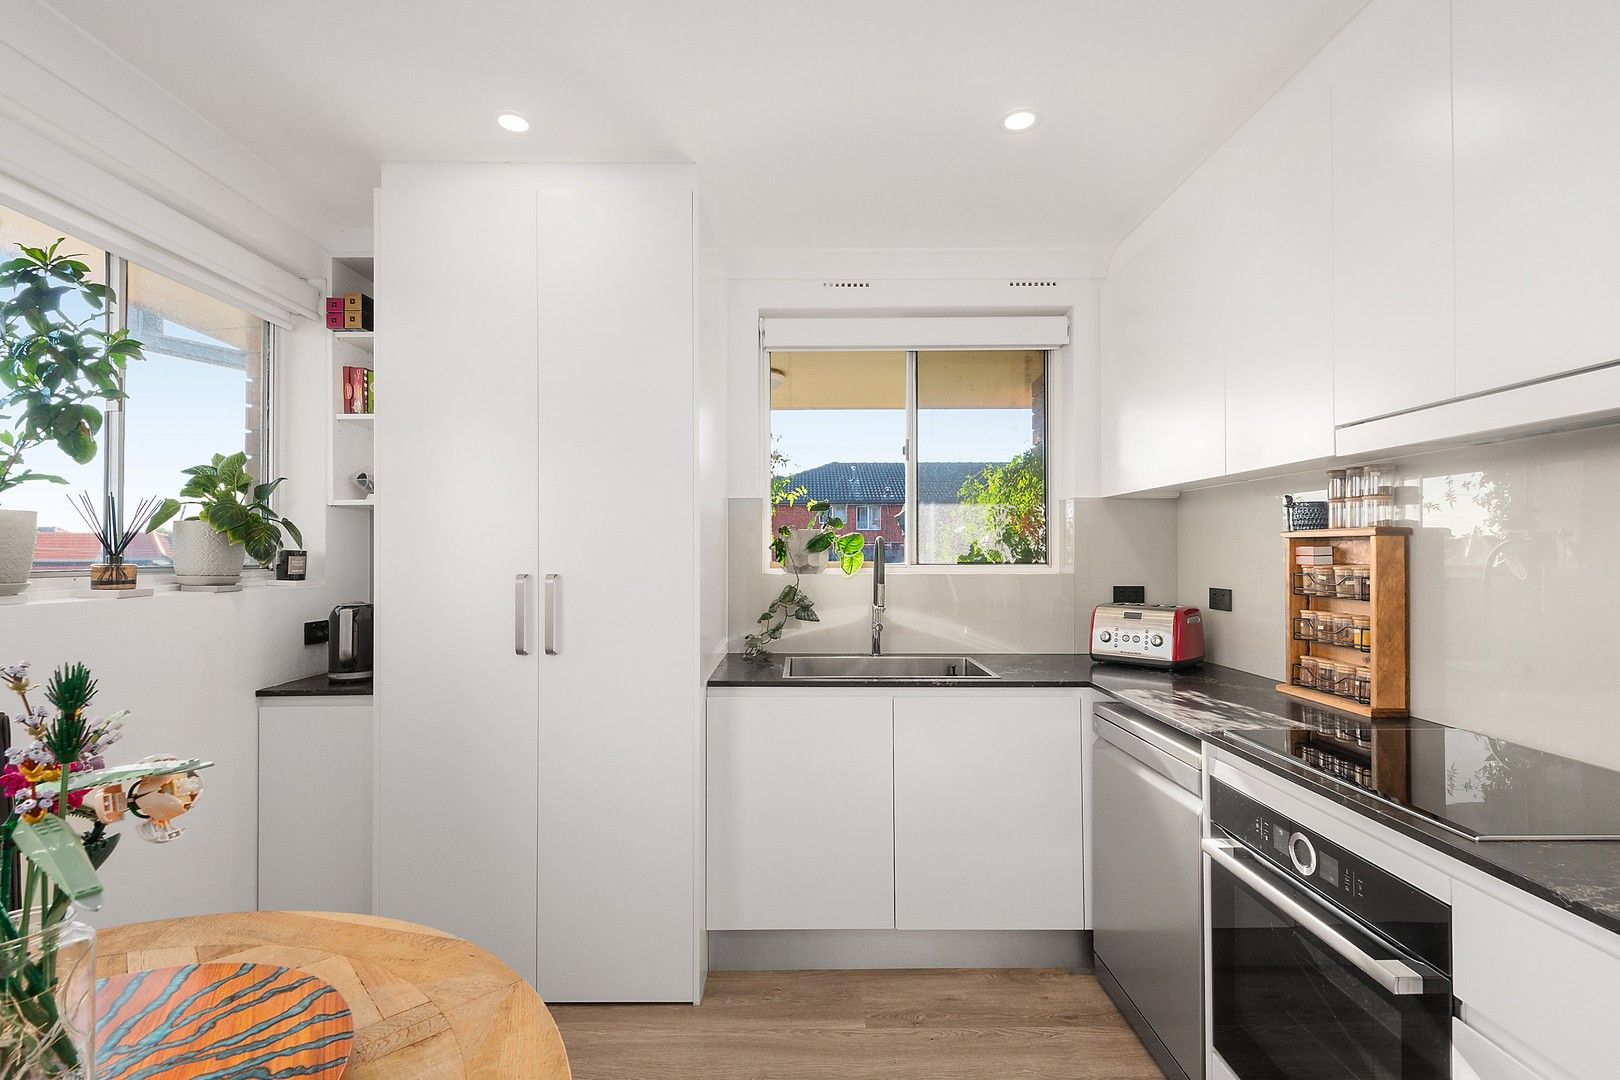 2 bedrooms Apartment / Unit / Flat in 5/75 Warren Road MARRICKVILLE NSW, 2204